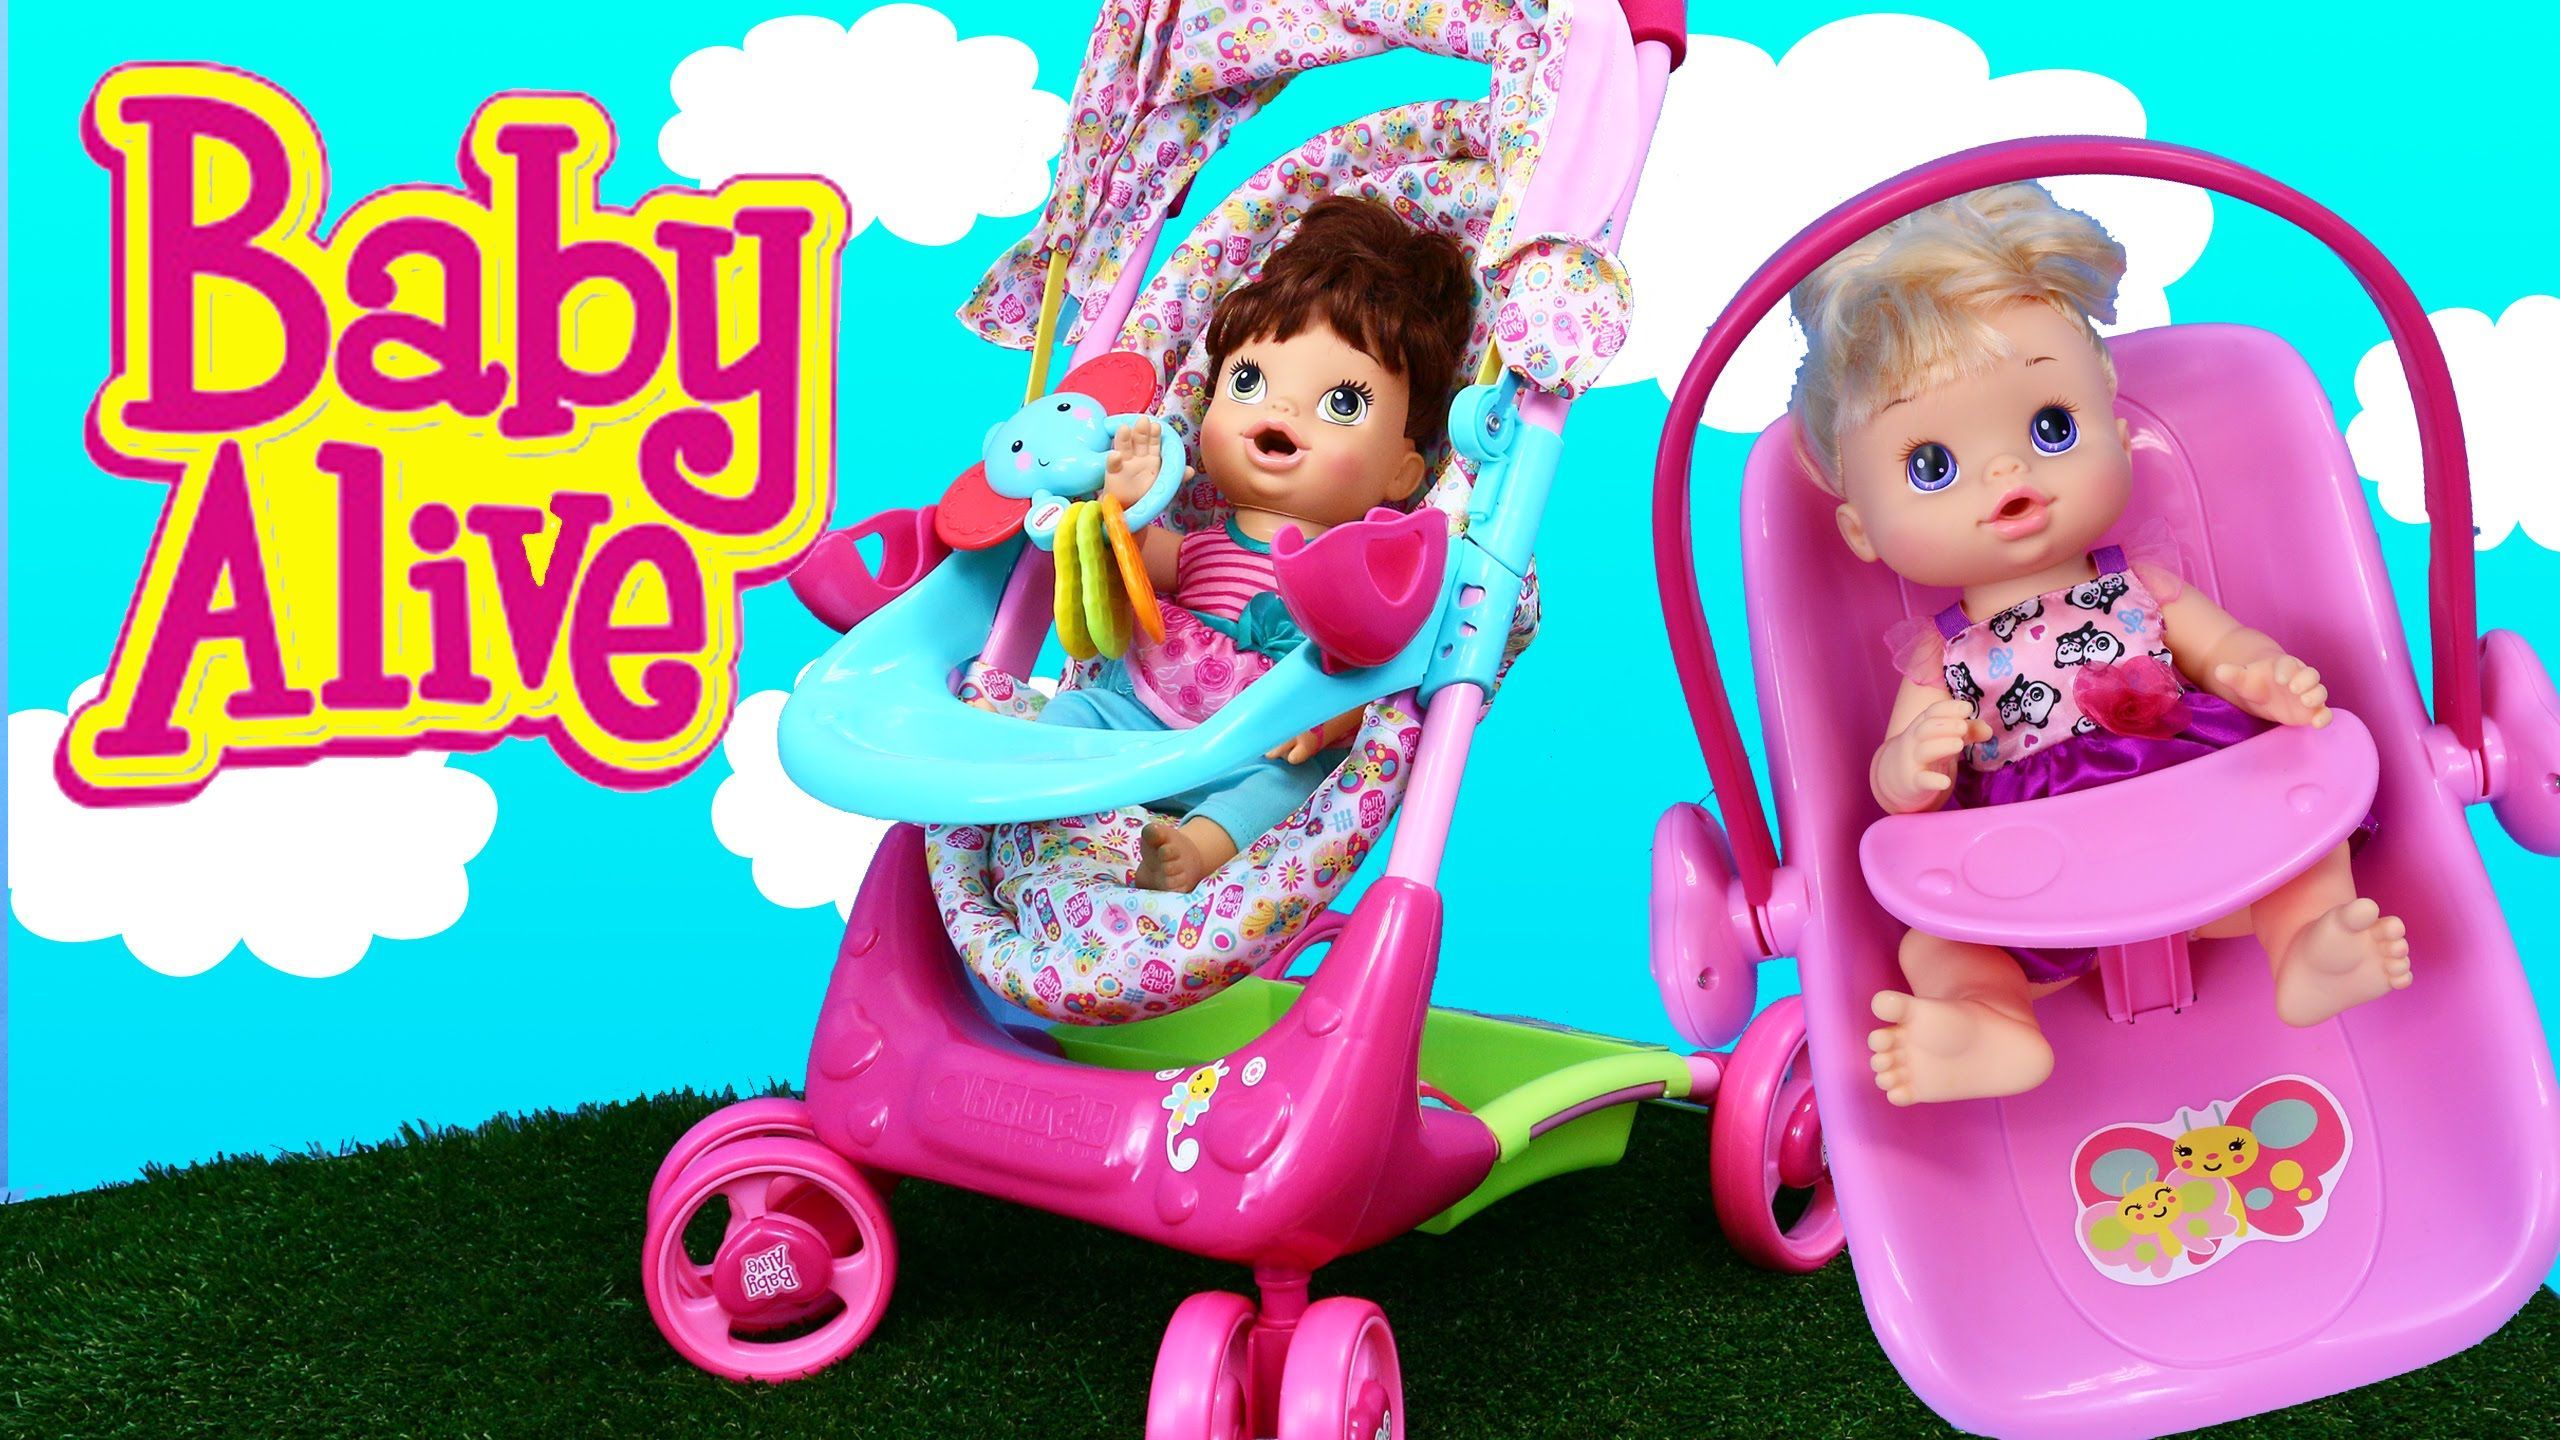 Elegant Baby Doll Autositz Und Kinderwagen In Inspiration Zu Renovieren Babyequipment Mit Baby Puppen Autositz Und Kinderw. Baby alive dolls, Baby alive, Stroller